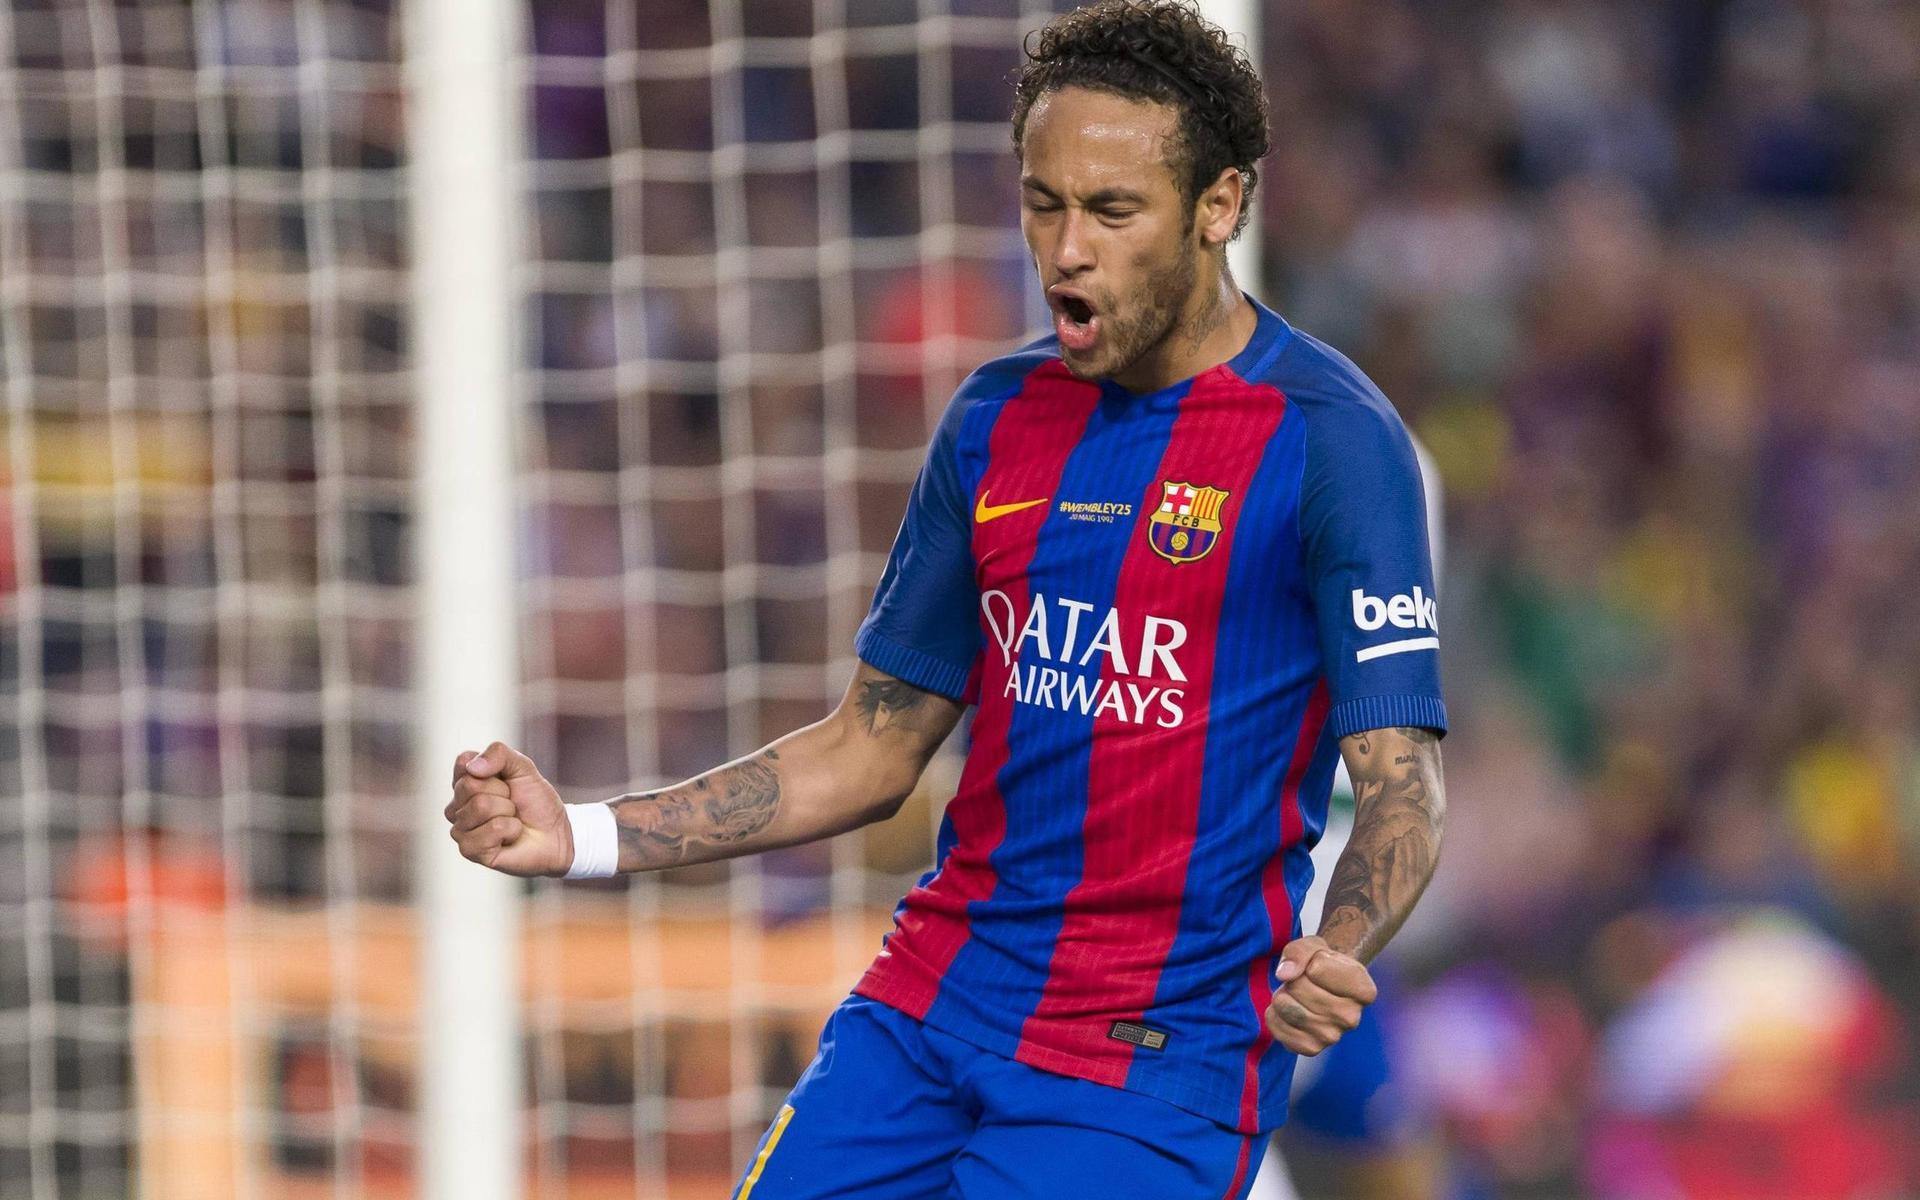 2017 lämnade Neymar Barcelona för spel i PSG. En övergång som lett till en utdragen rättsvtvist. 